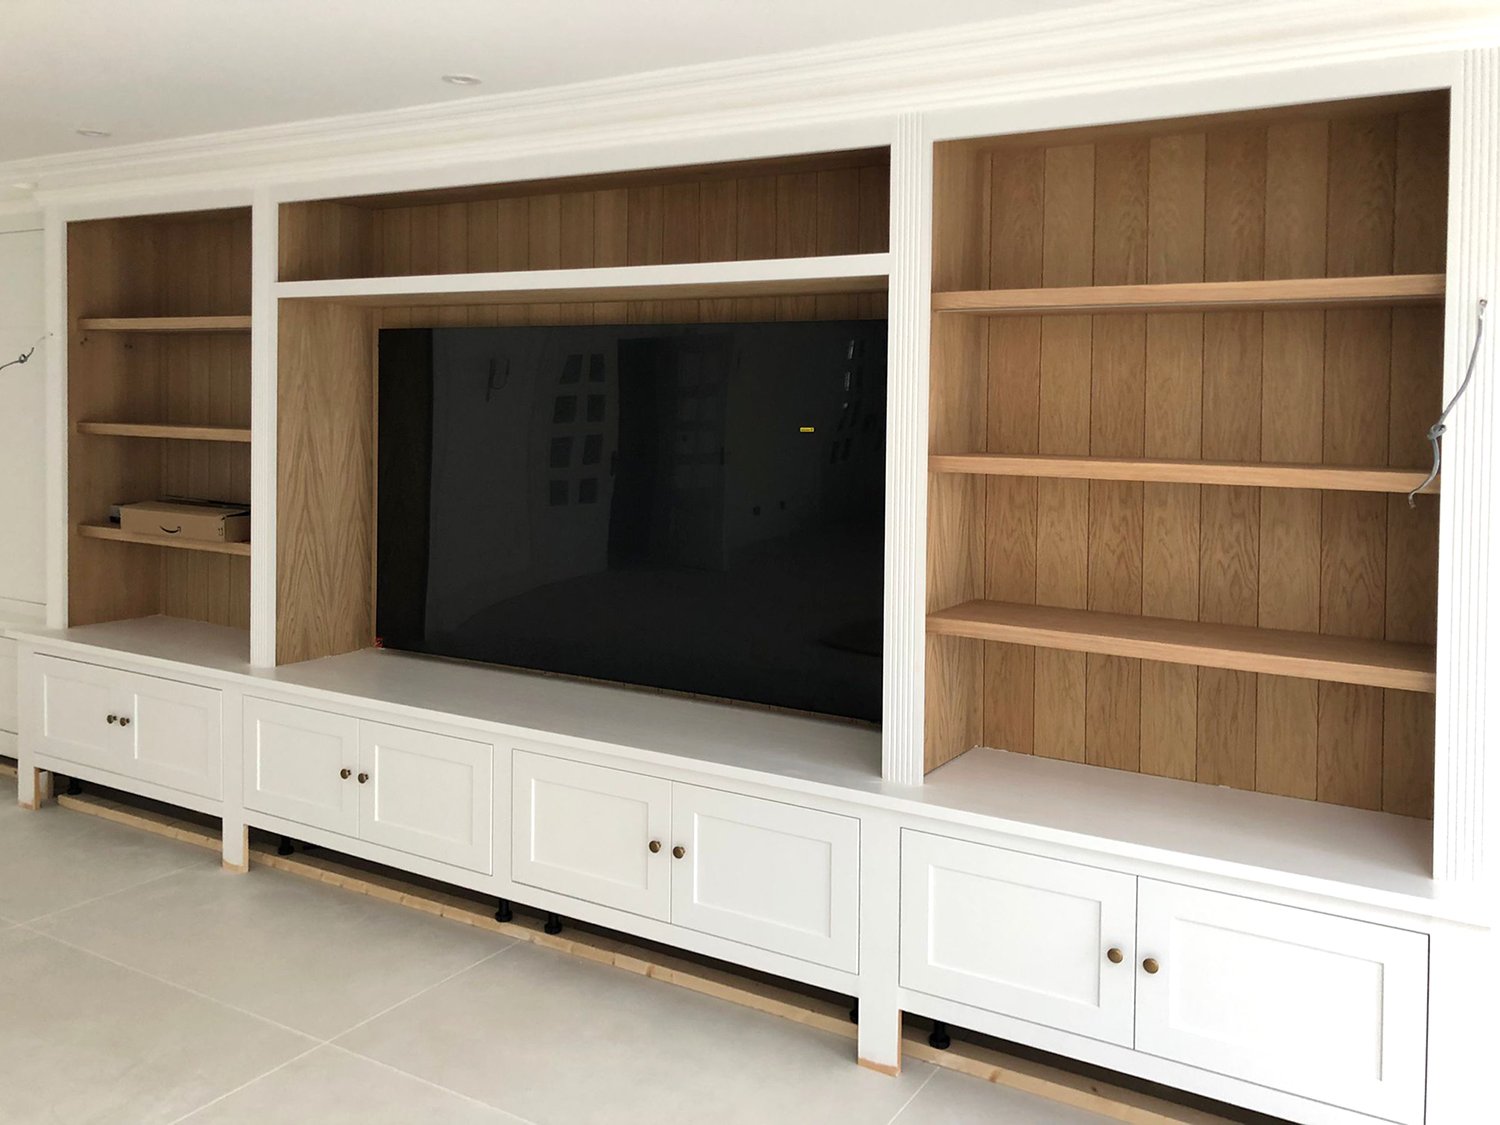 lime interiors st. Albans Hertfordshire bedroom bespoke wardrobes design television room lounge